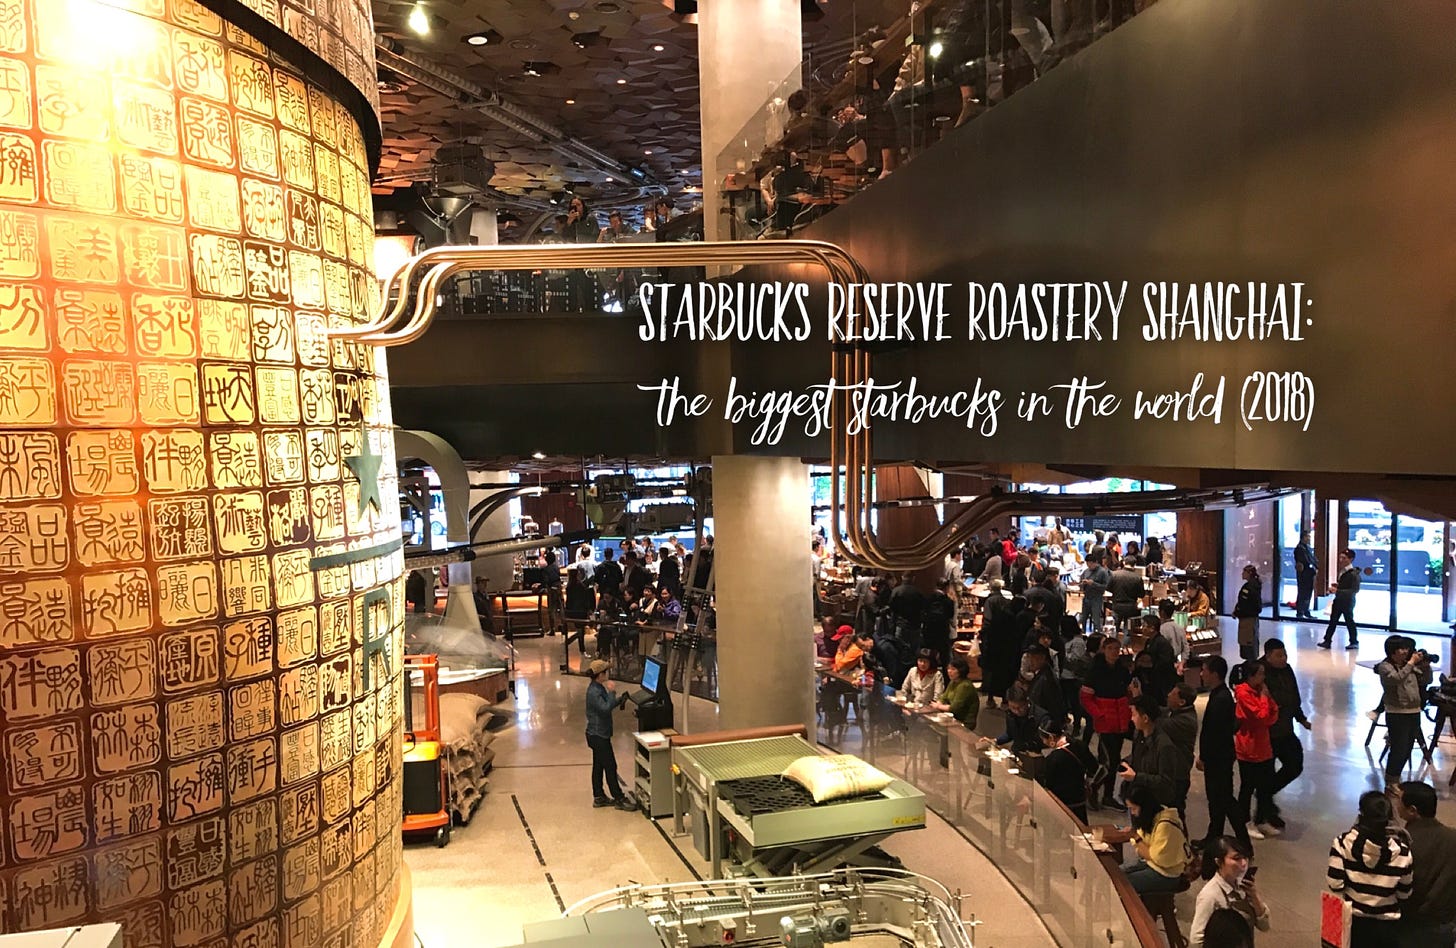 Starbucks Reserve Roastery Shanghai: The Biggest Starbucks in the World  (2018) - She Walks the World